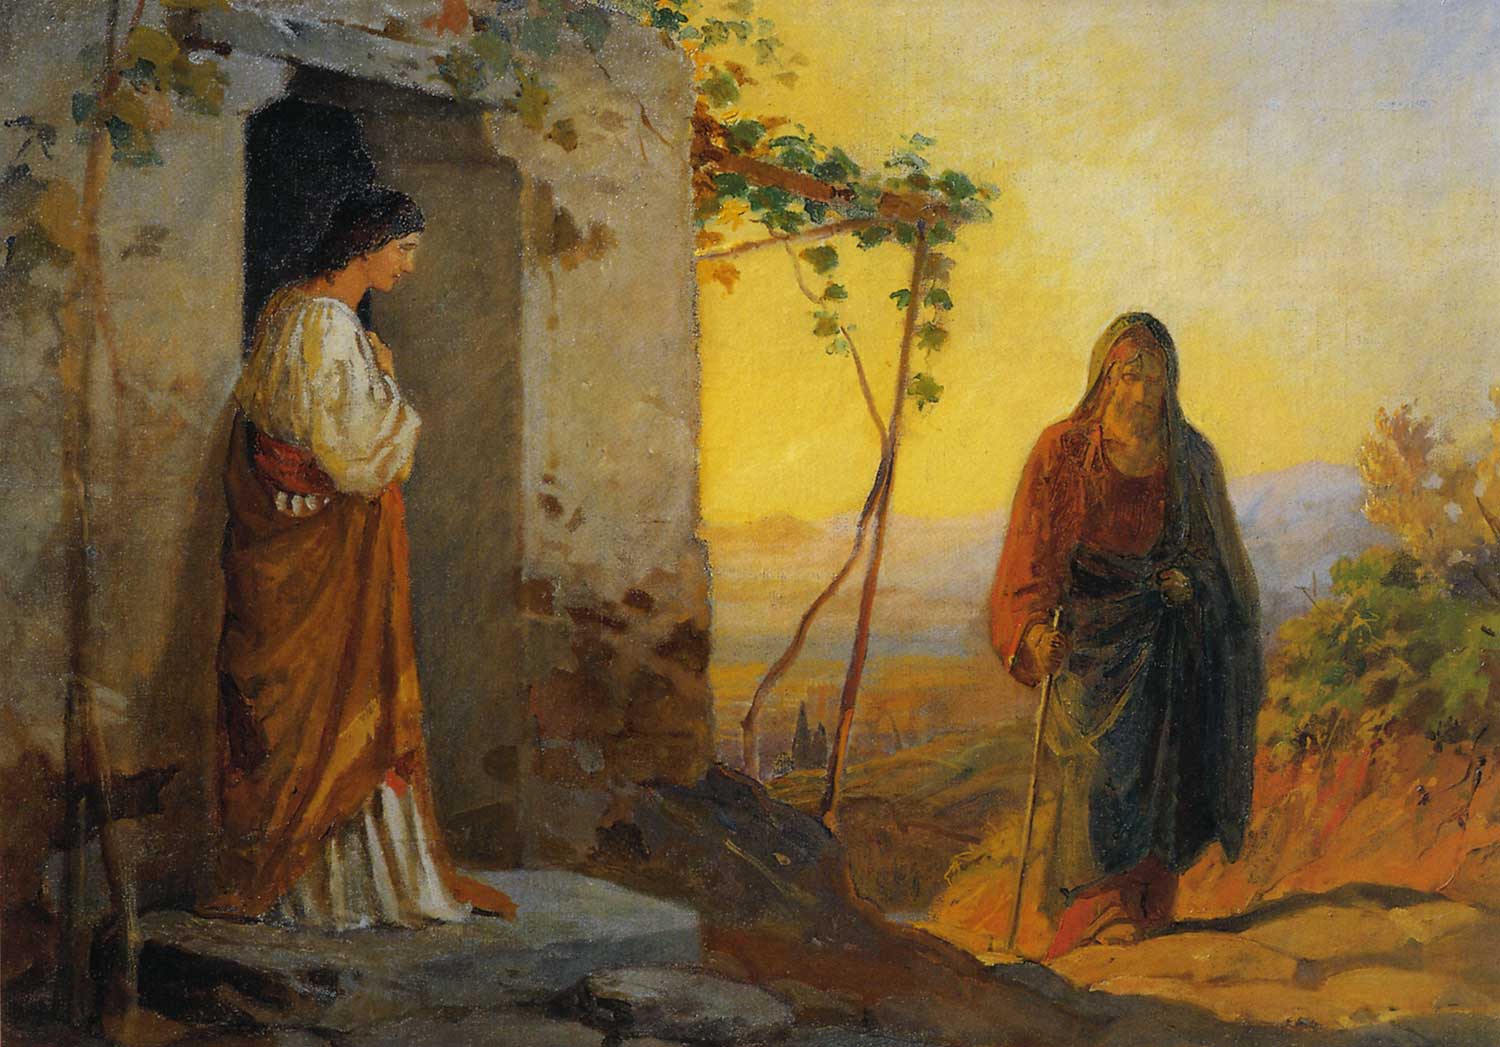 Мария, сестра Лазаря, встречает Иисуса Христа, идущего к ним в дом